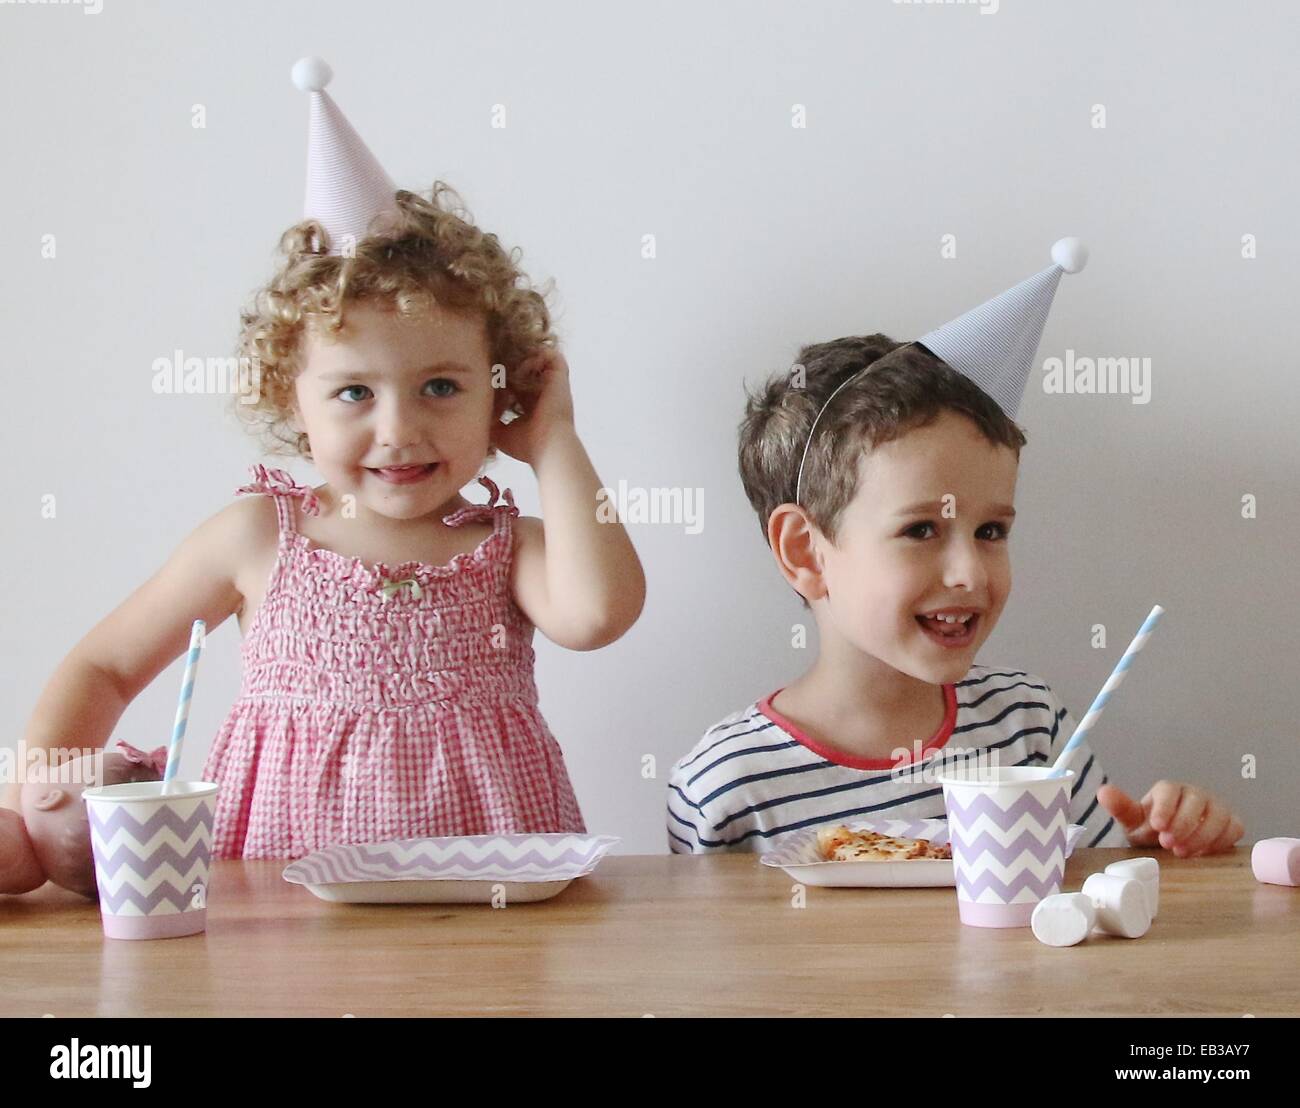 Porträt von zwei Kindern, die an einem Tisch sitzen, essen und trinken auf einer Geburtstagsfeier Stockfoto